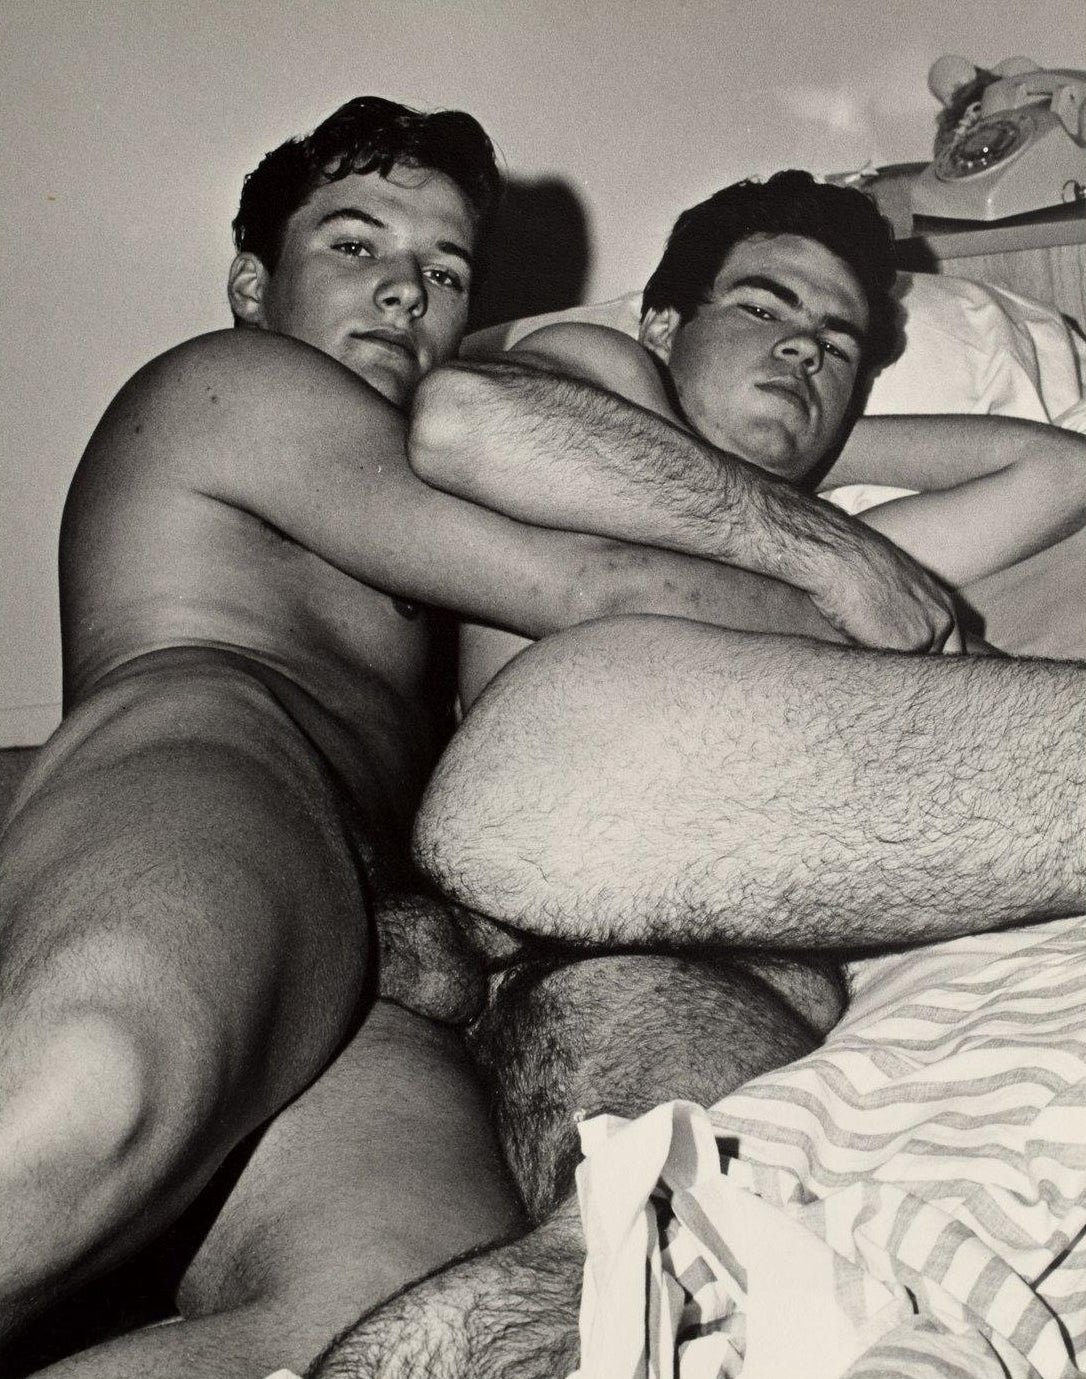 Vintage Gay Porn Anal - Bruce of LA Vintage Homoerotic Anal Gay Sex 1960s Taboo Gay Interest - â€“  Jakero77